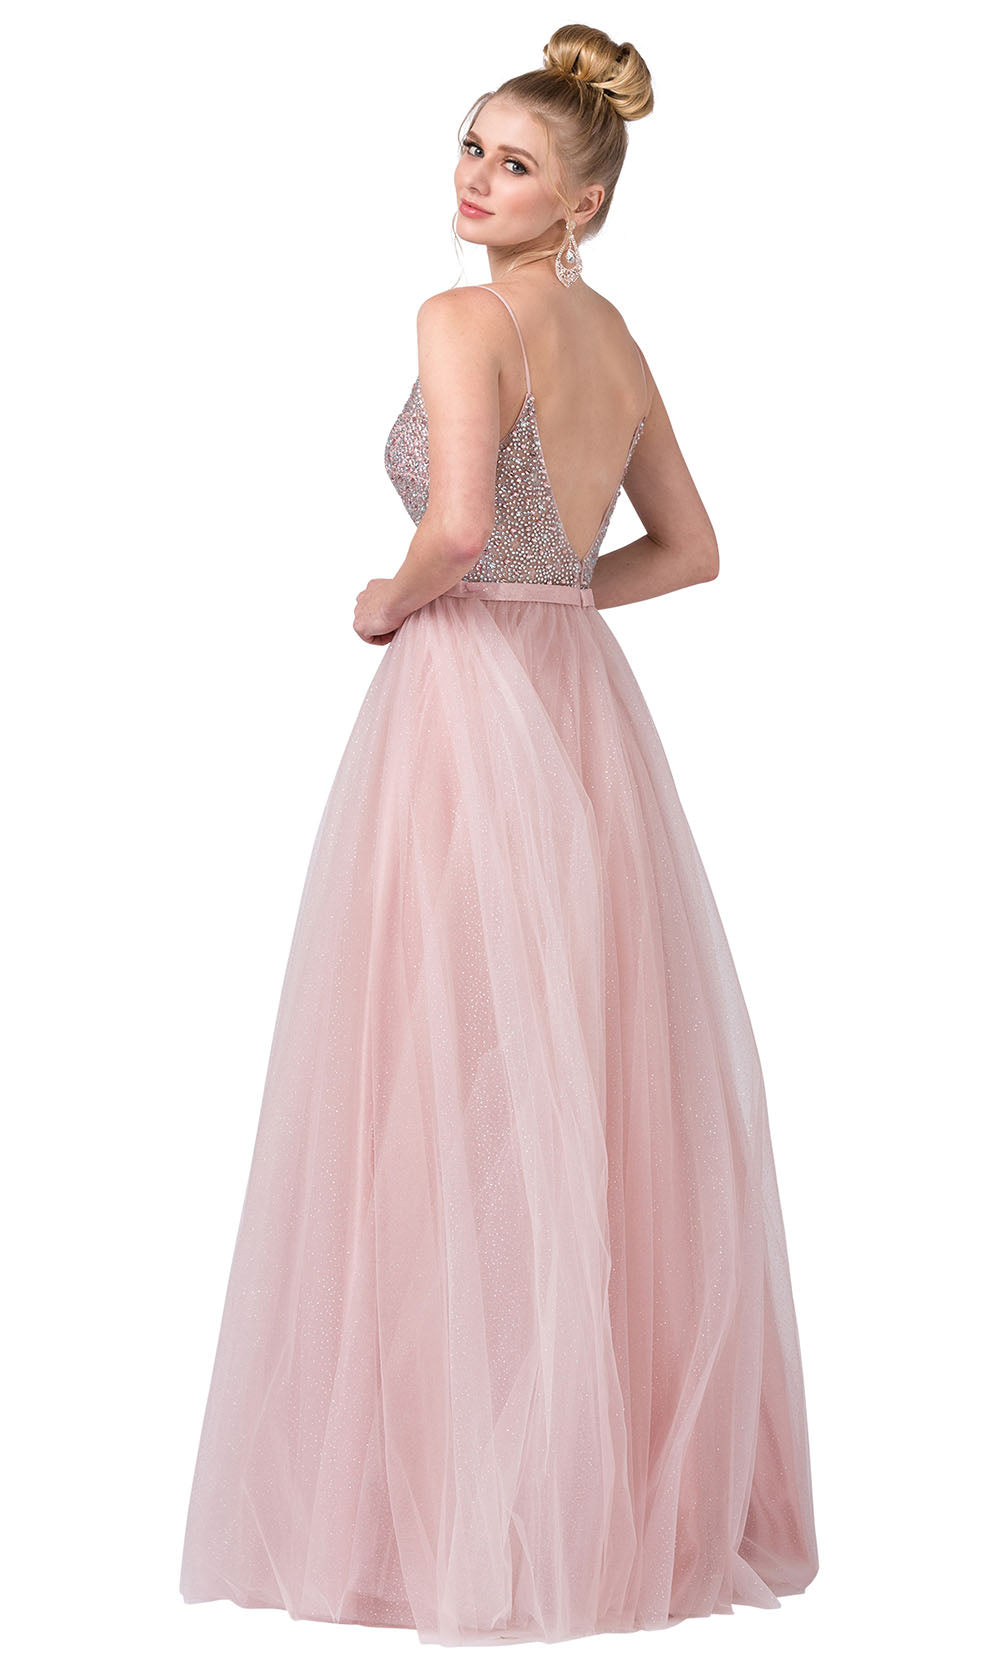 Dancing Queen - 2644 Open Back Beaded A-Line Dress In Pink